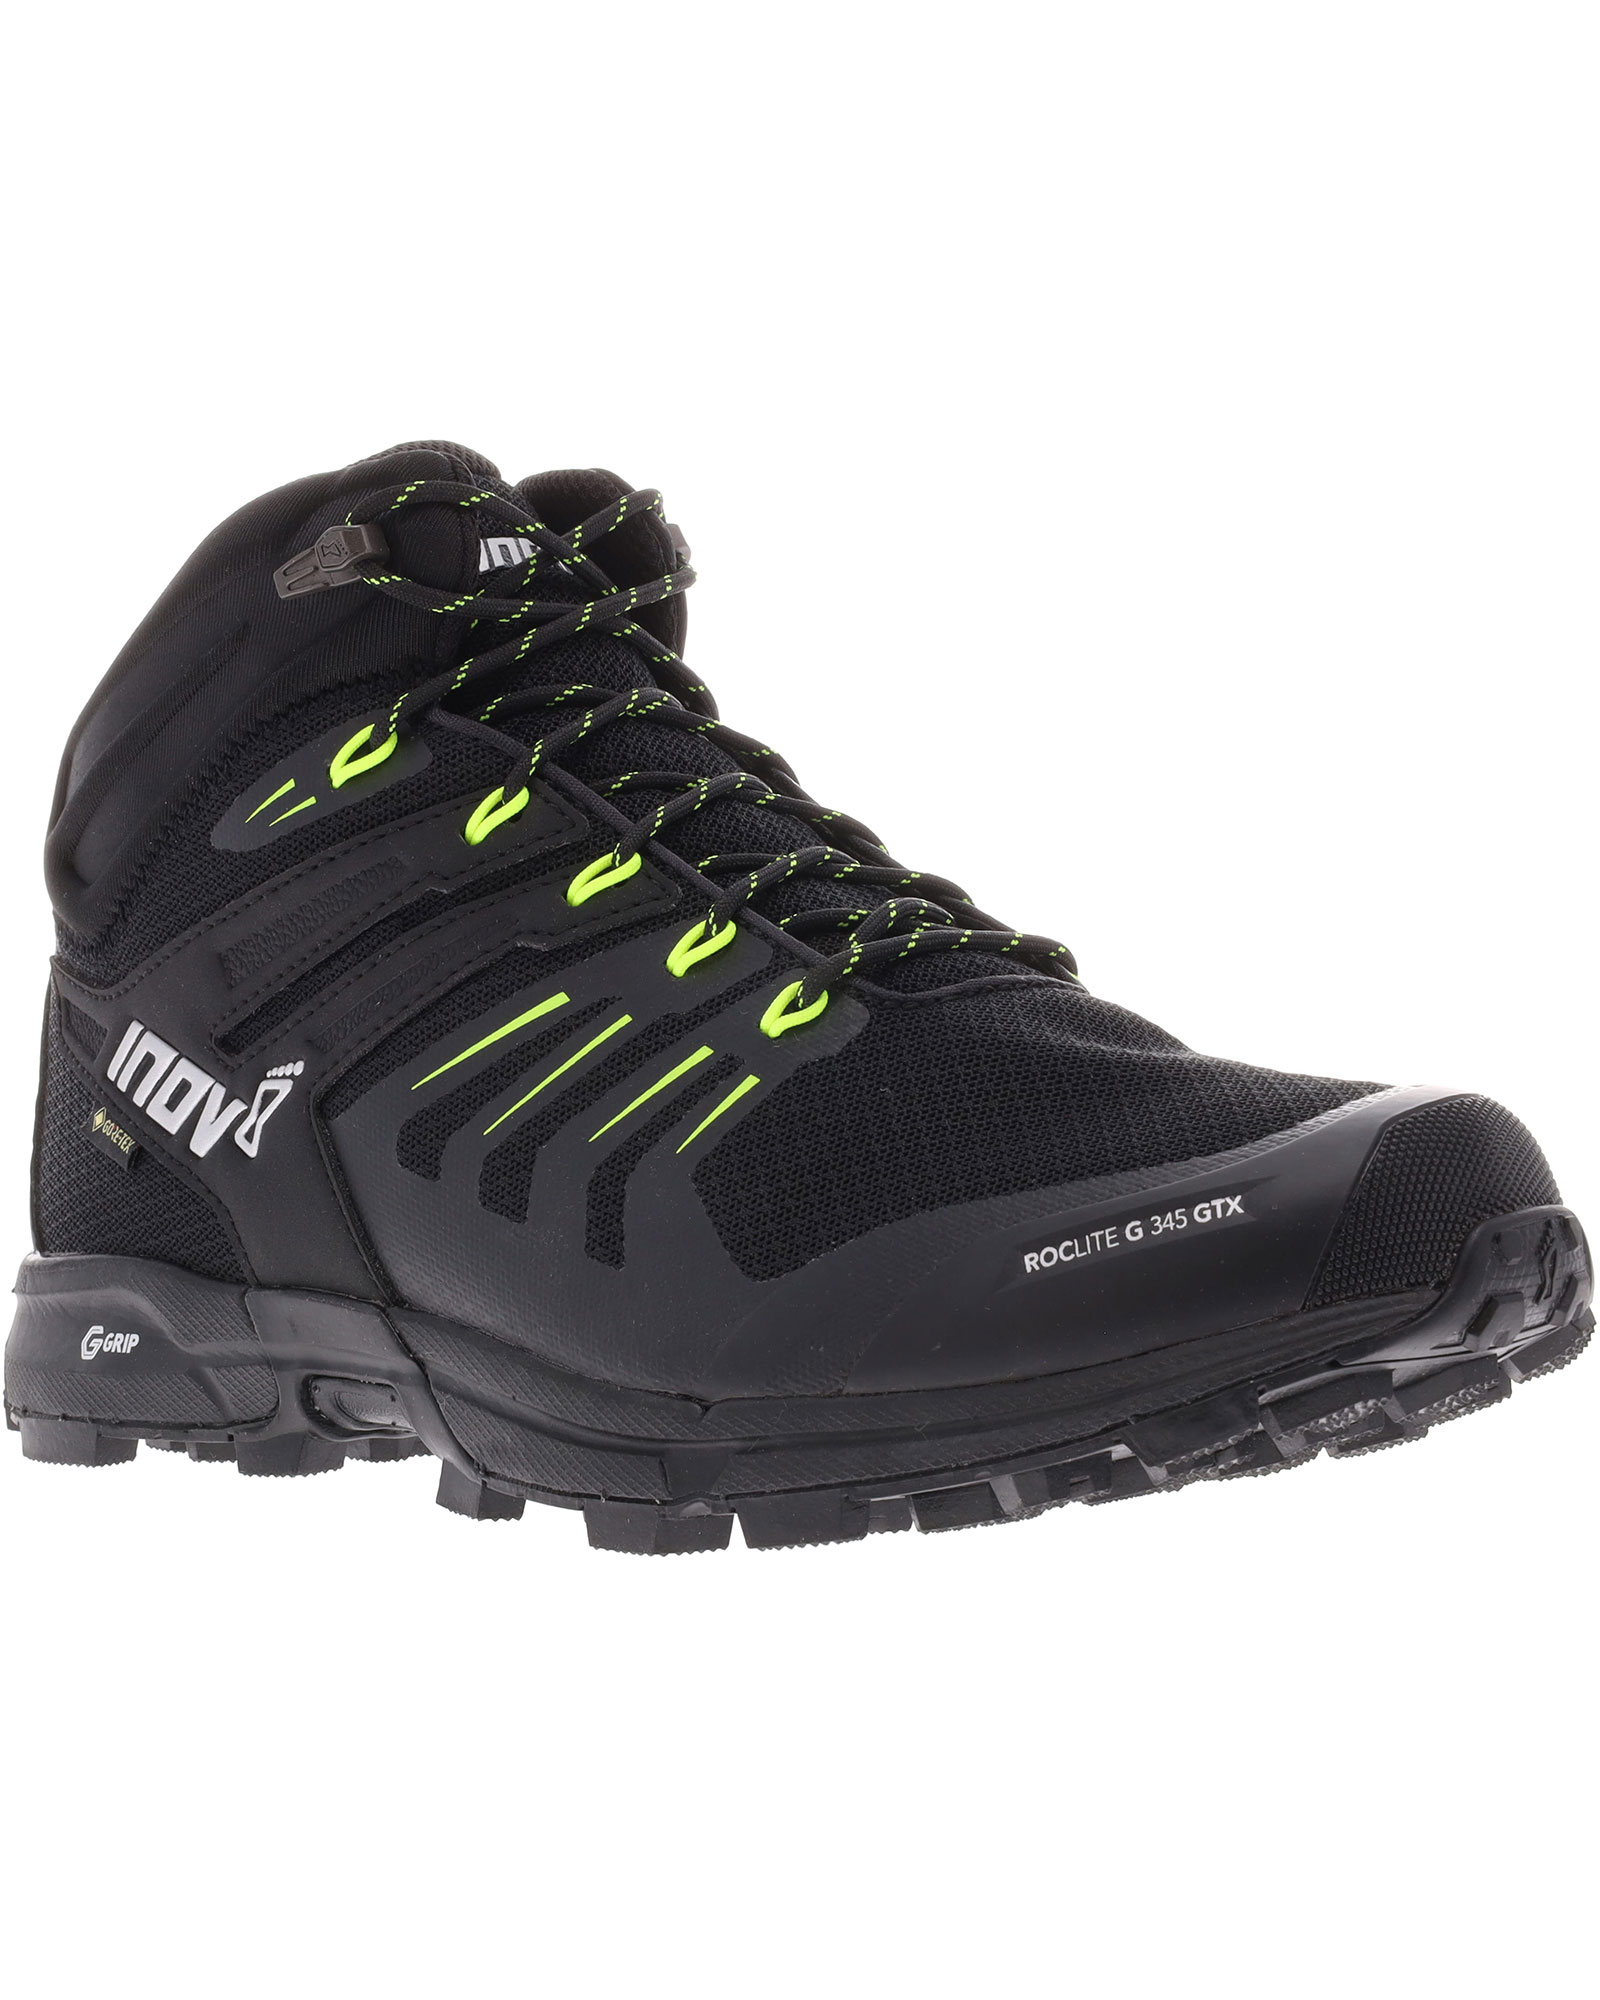 Inov 8 Roclite G 345 V2 GORE TEX Men’s Boots - Black/Lime UK 11.5